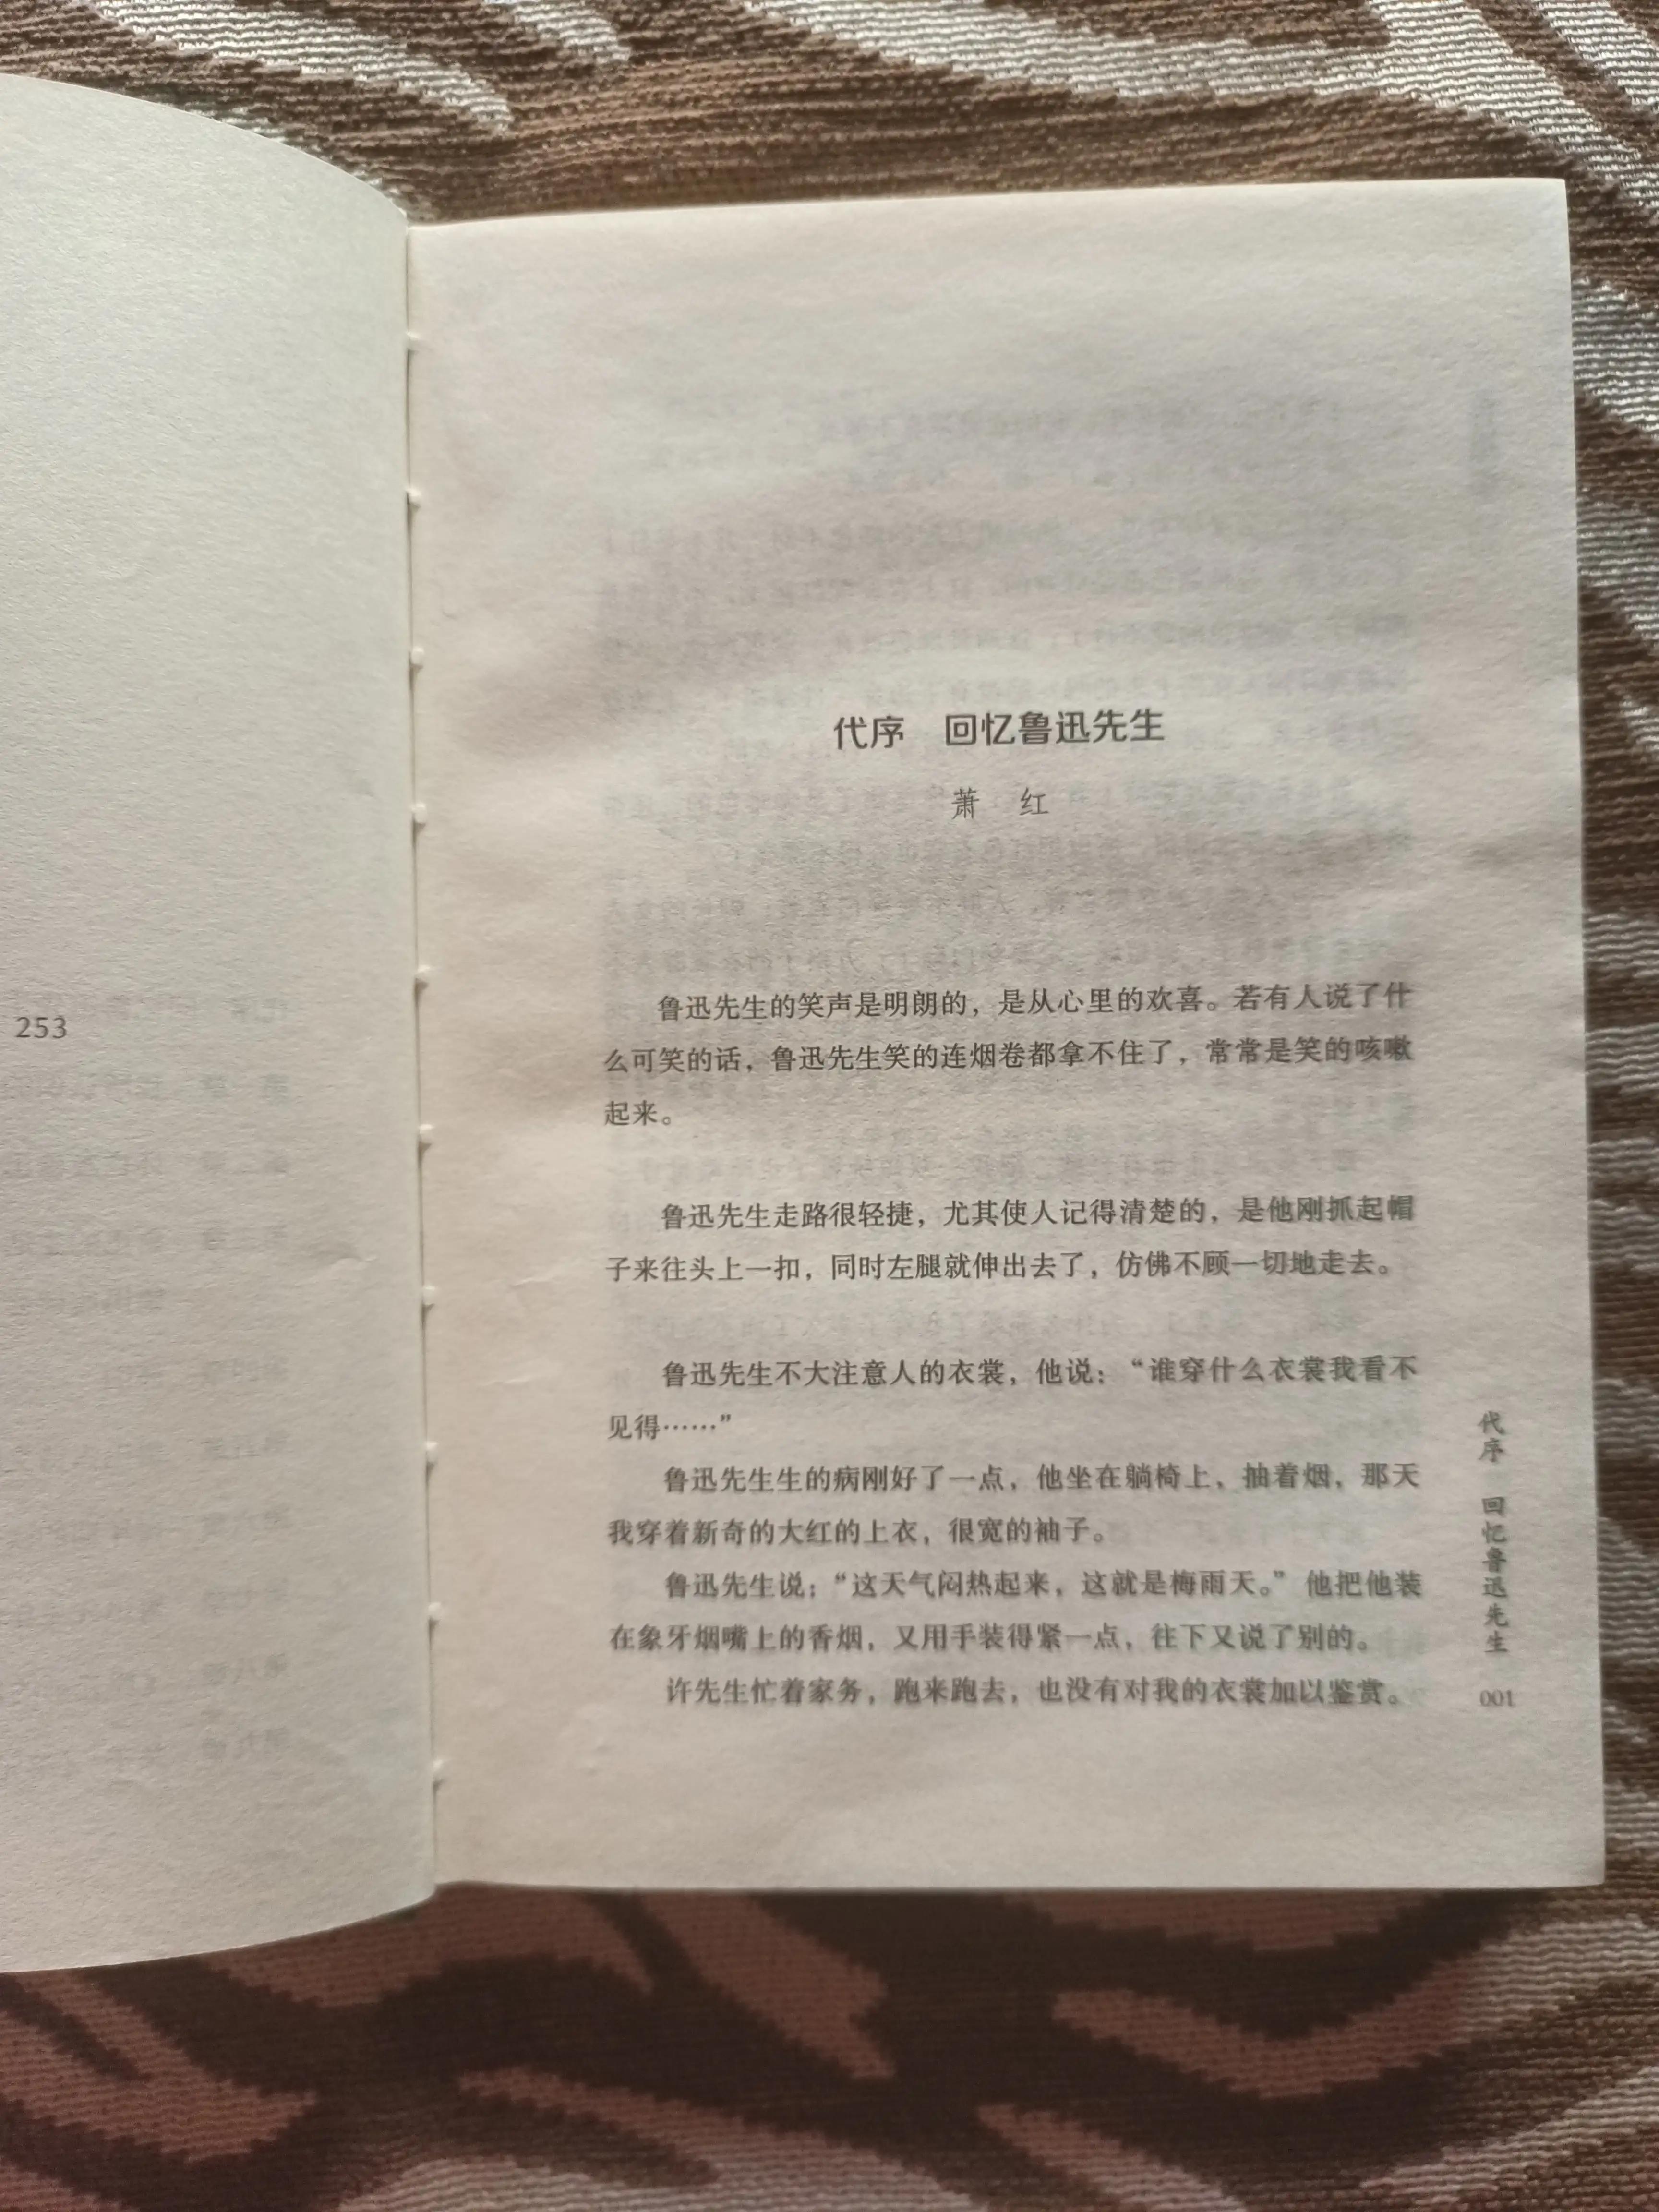 许寿裳的《鲁迅传》是了解一个真实的鲁迅先生的好书